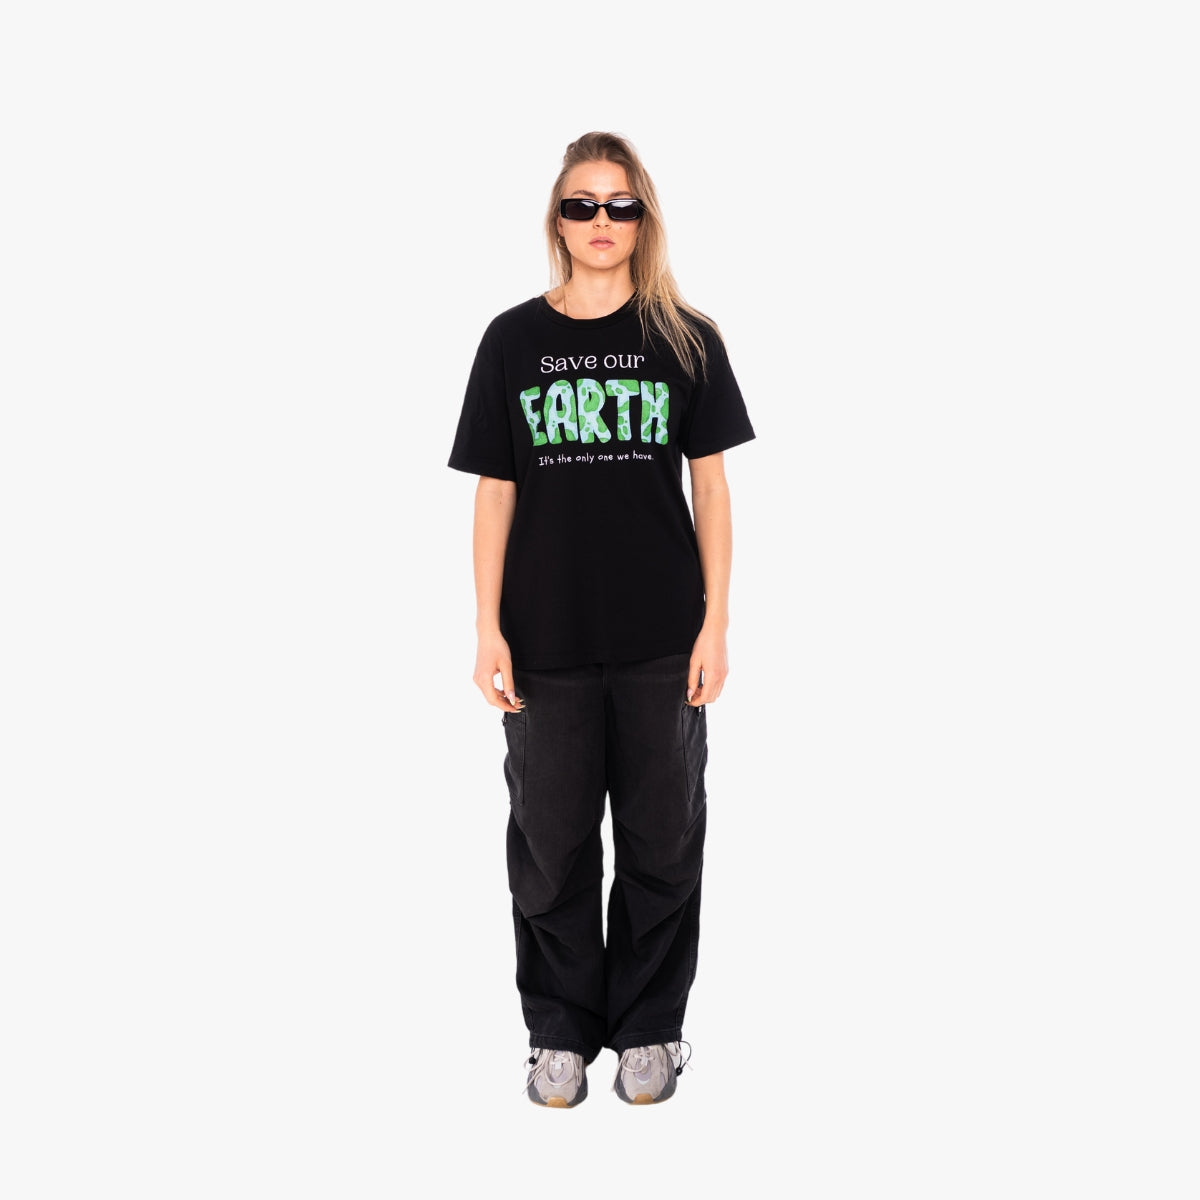 'SAVE OUR EARTH' Organic Relaxed Shirt in der Farbe Black als Komplettaufnahme vom Outfit getragen von einem weiblichen Model